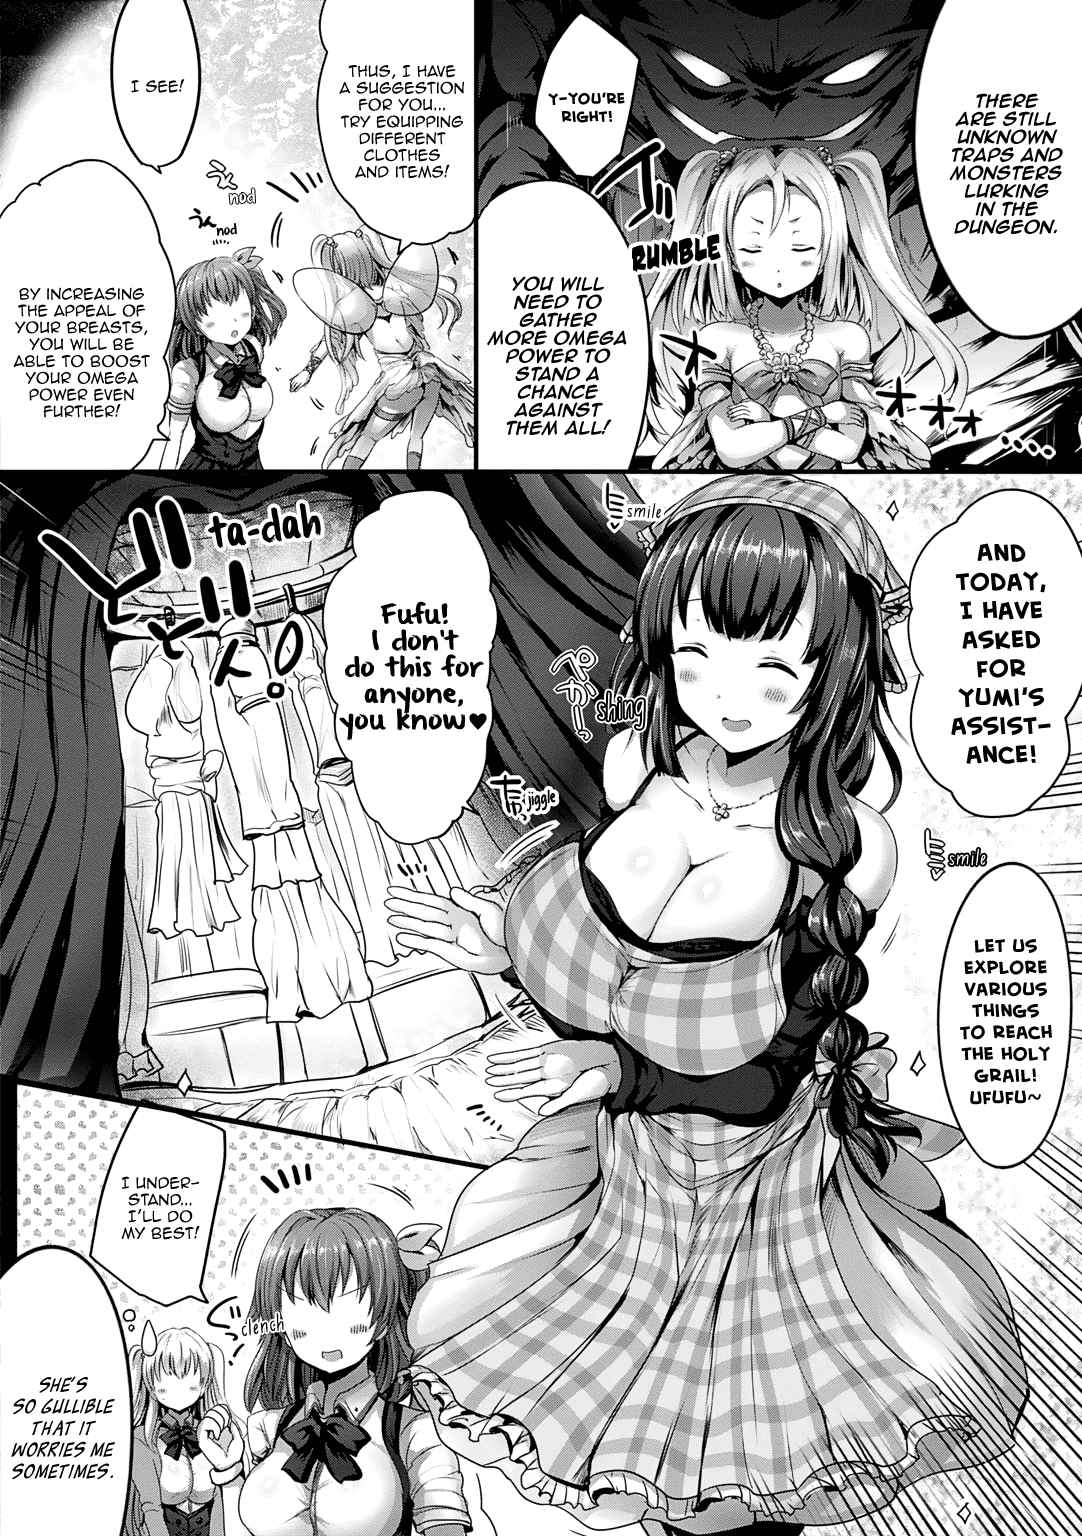 ω Labyrinth Dengeki Comic Anthology Vol. 1 Ch. 13 Increasing Your Femininity (Naoya)